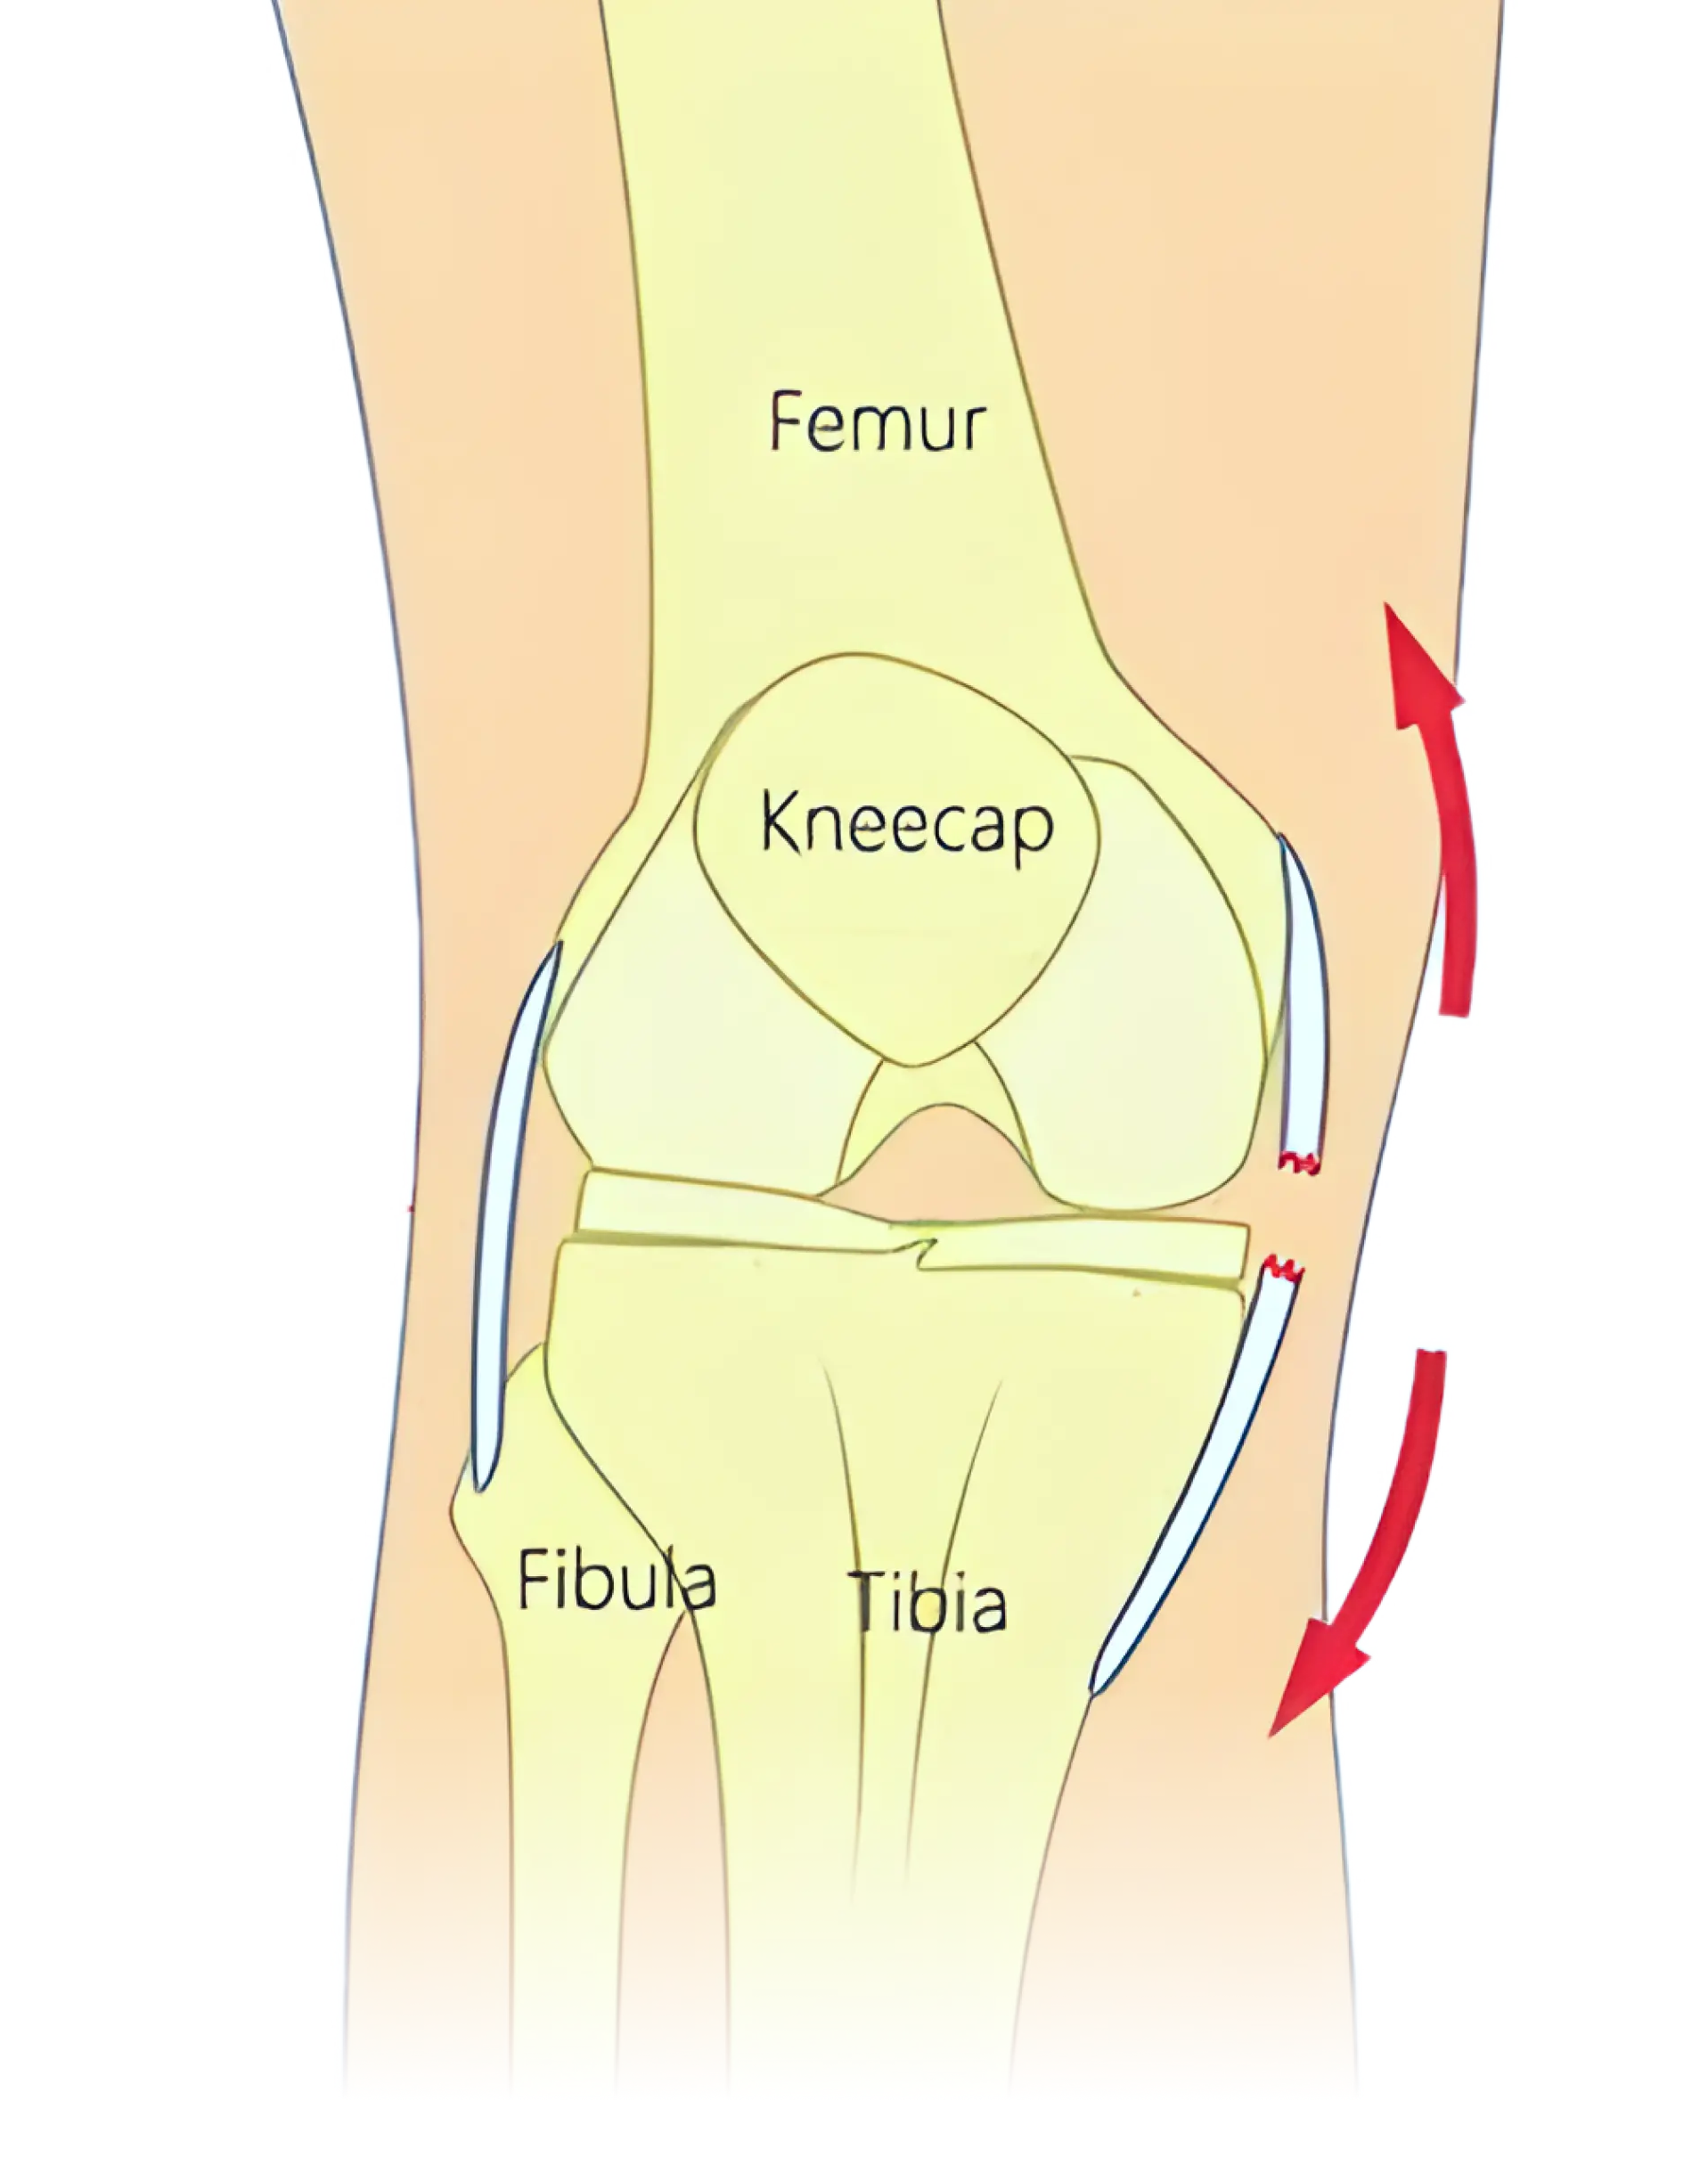 Knee Injury image